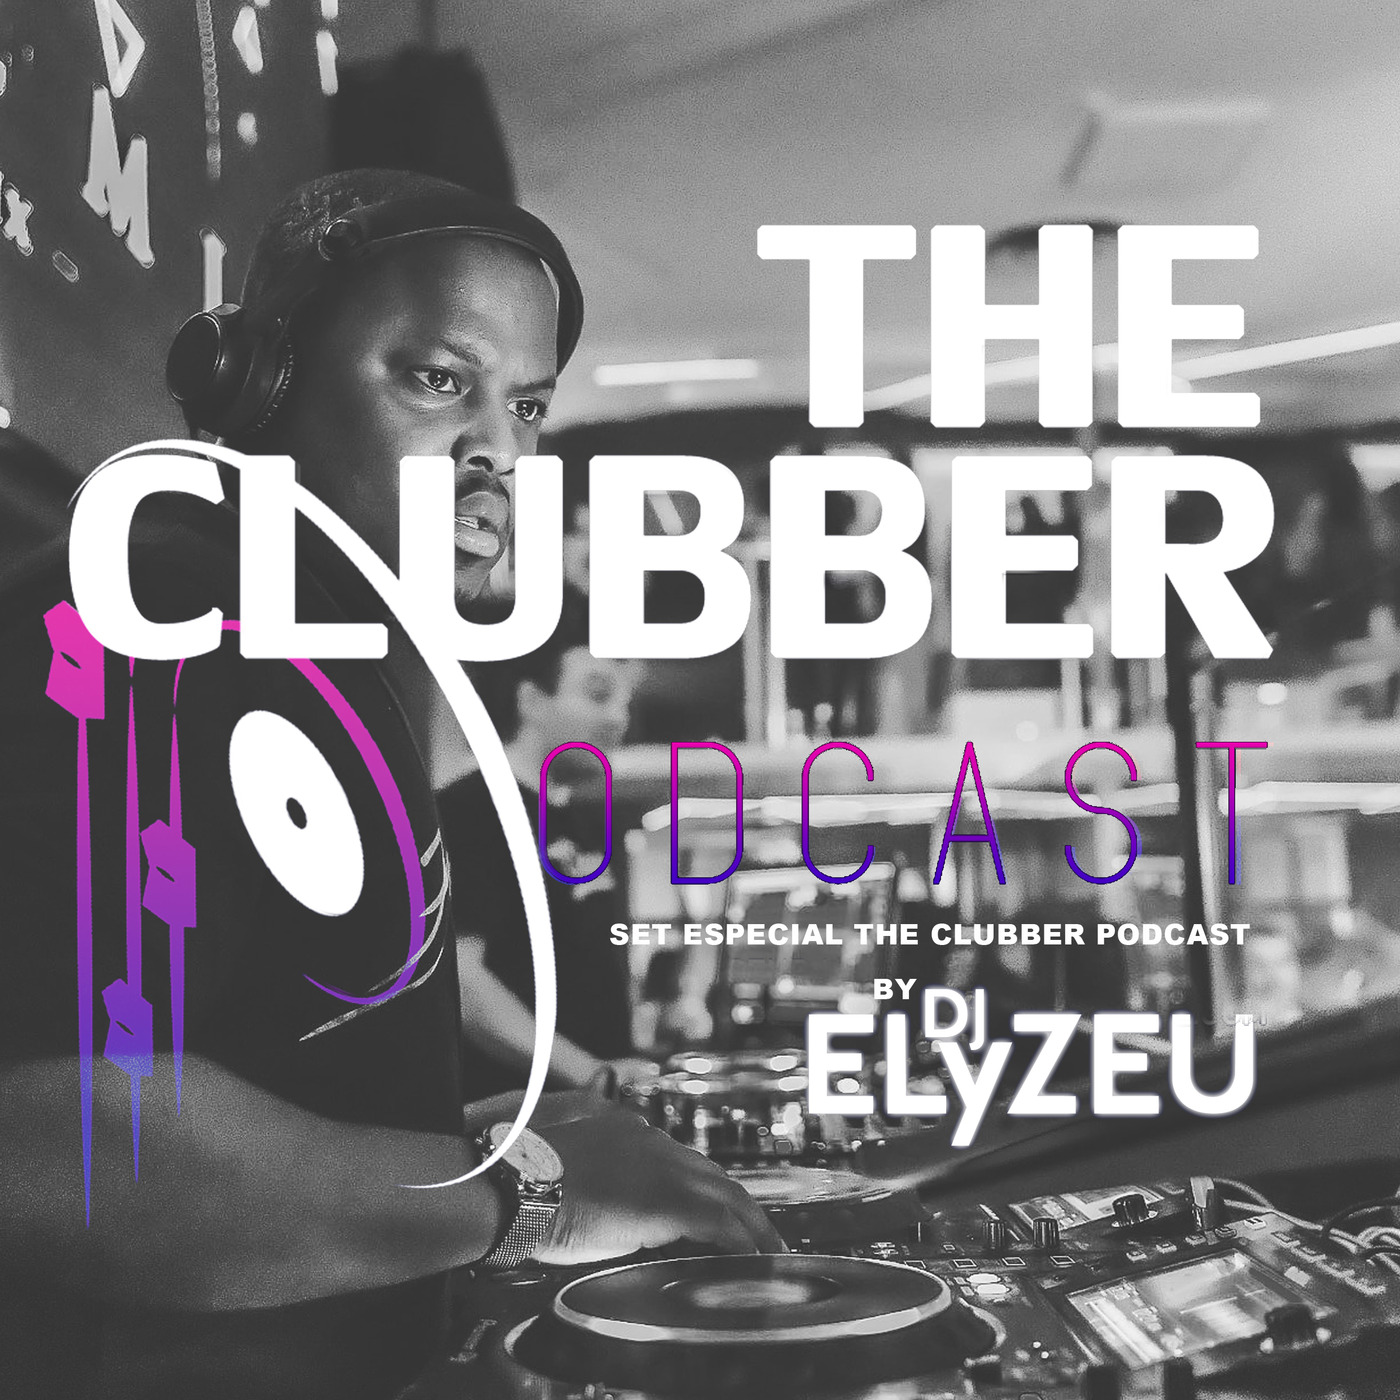 THE  CLUBBER BY DJ ELYZEU